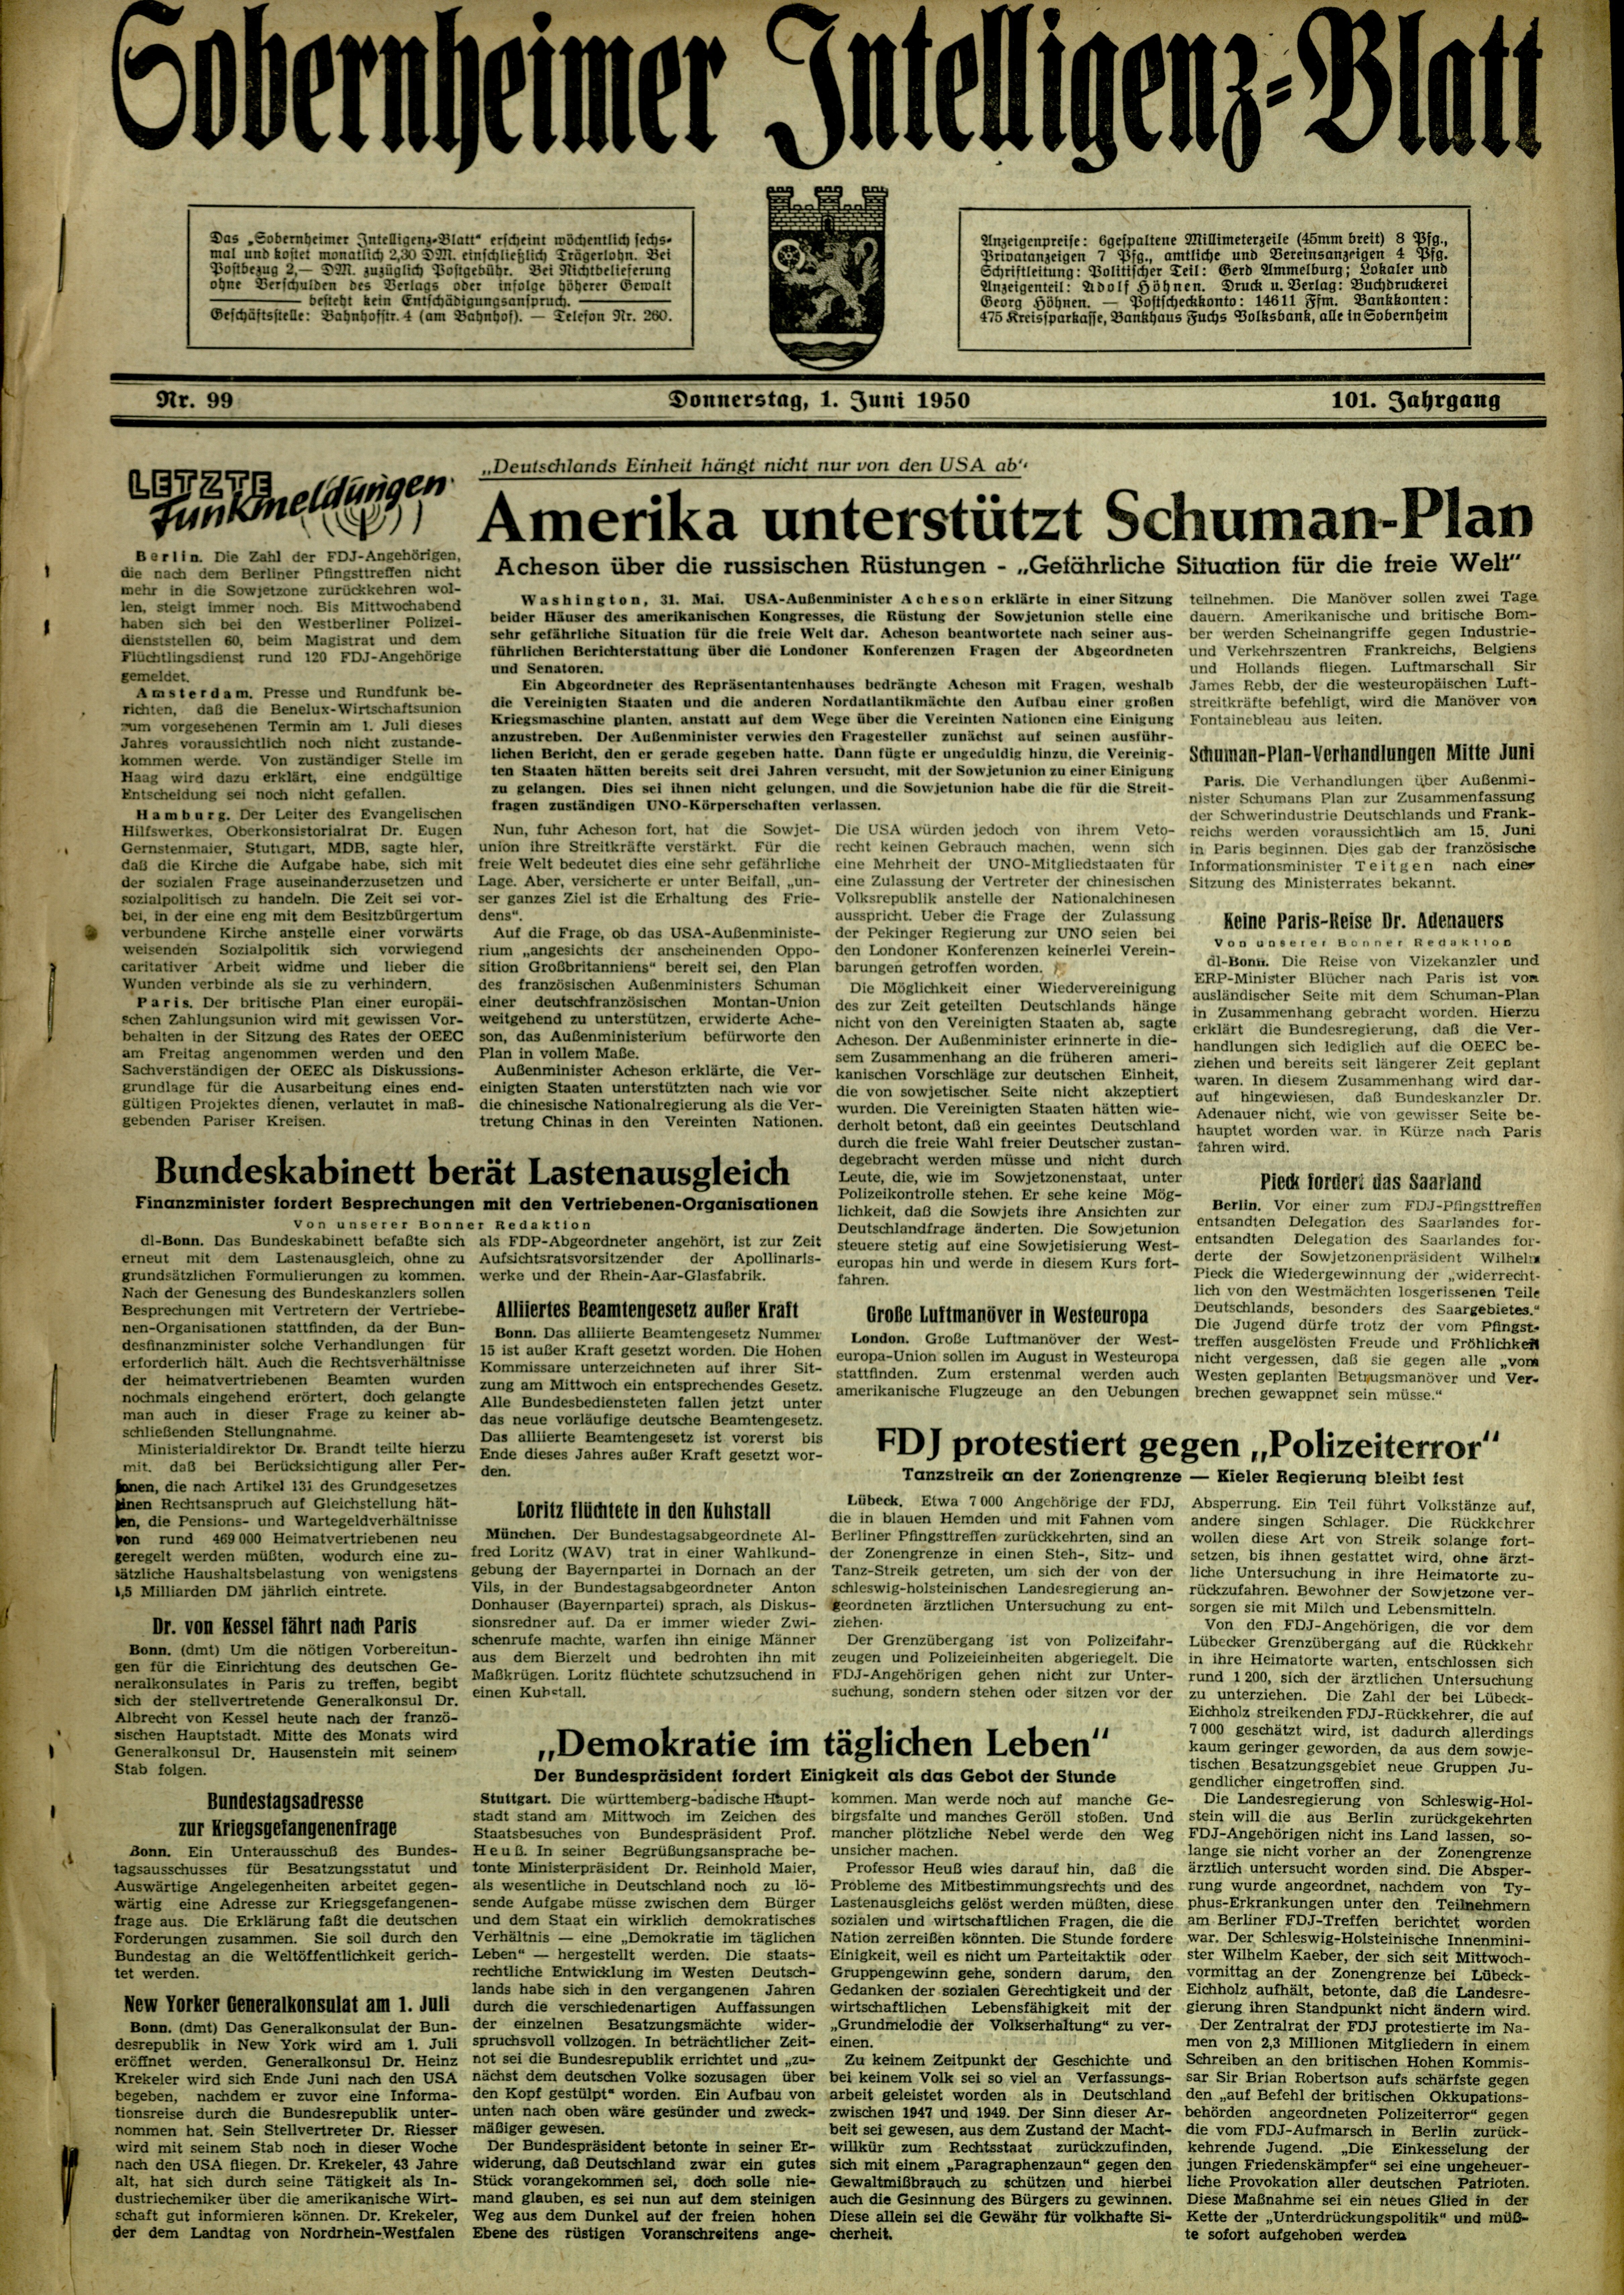 Zeitung: Sobernheimer Intelligenzblatt; Juni 1950, Jg. 82 Nr. 99 (Heimatmuseum Bad Sobernheim CC BY-NC-SA)